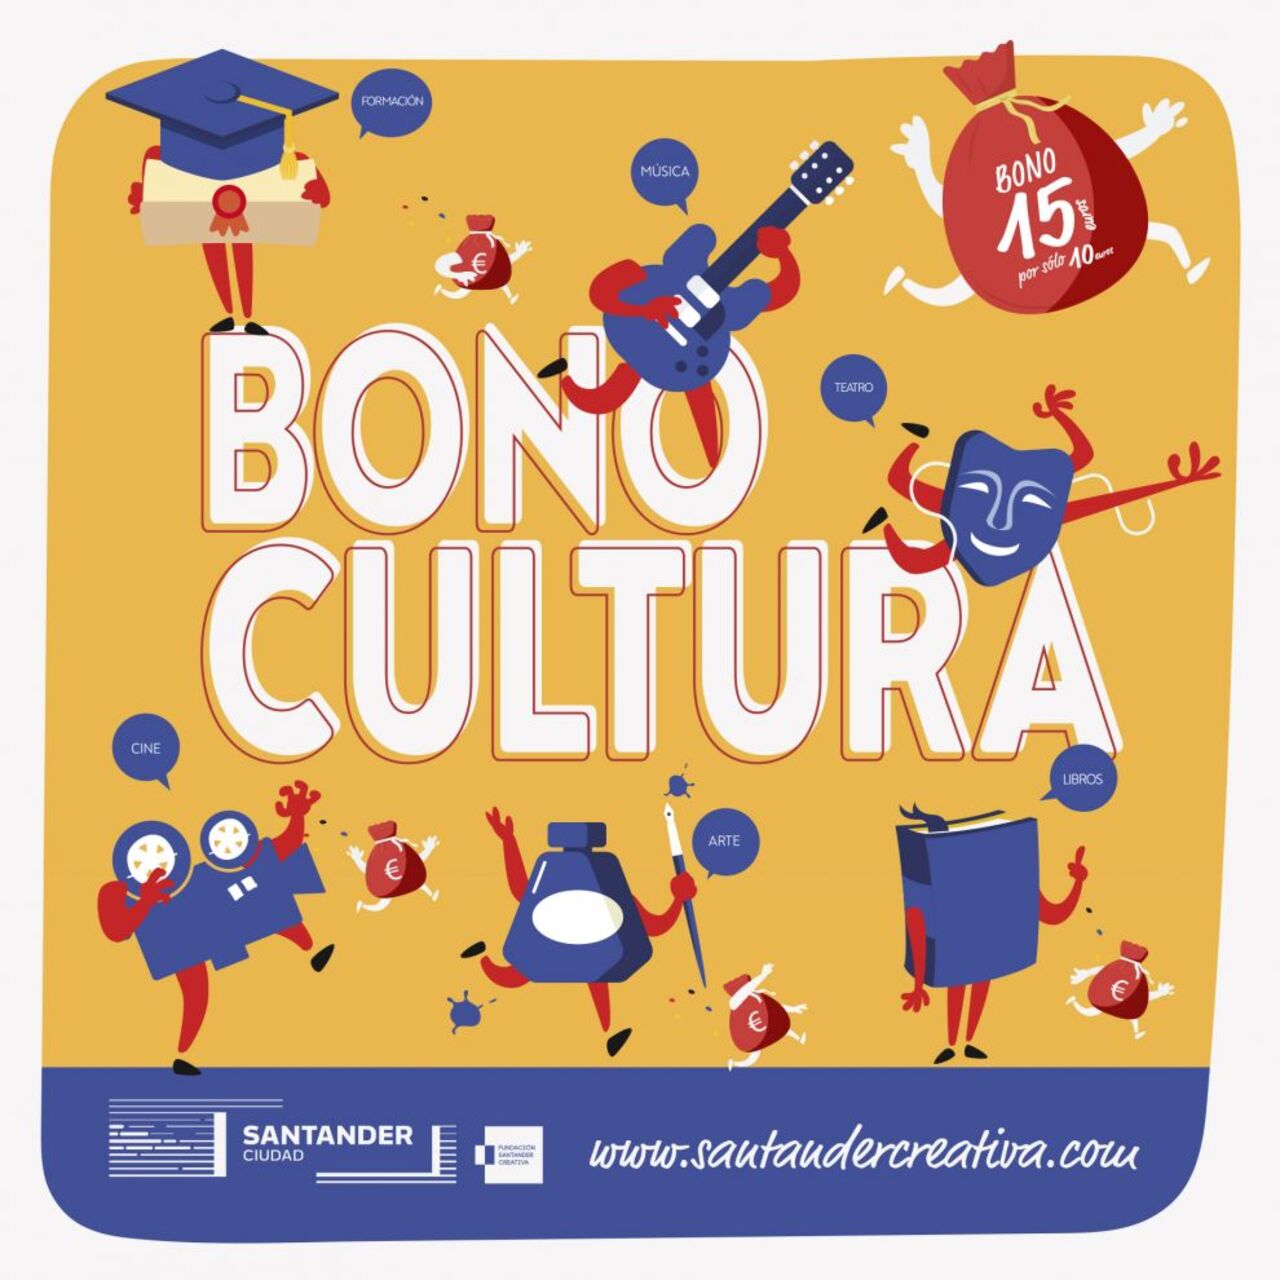 El Bono Cultura se pone a la venta este viernes a través de los canales de Liberbank